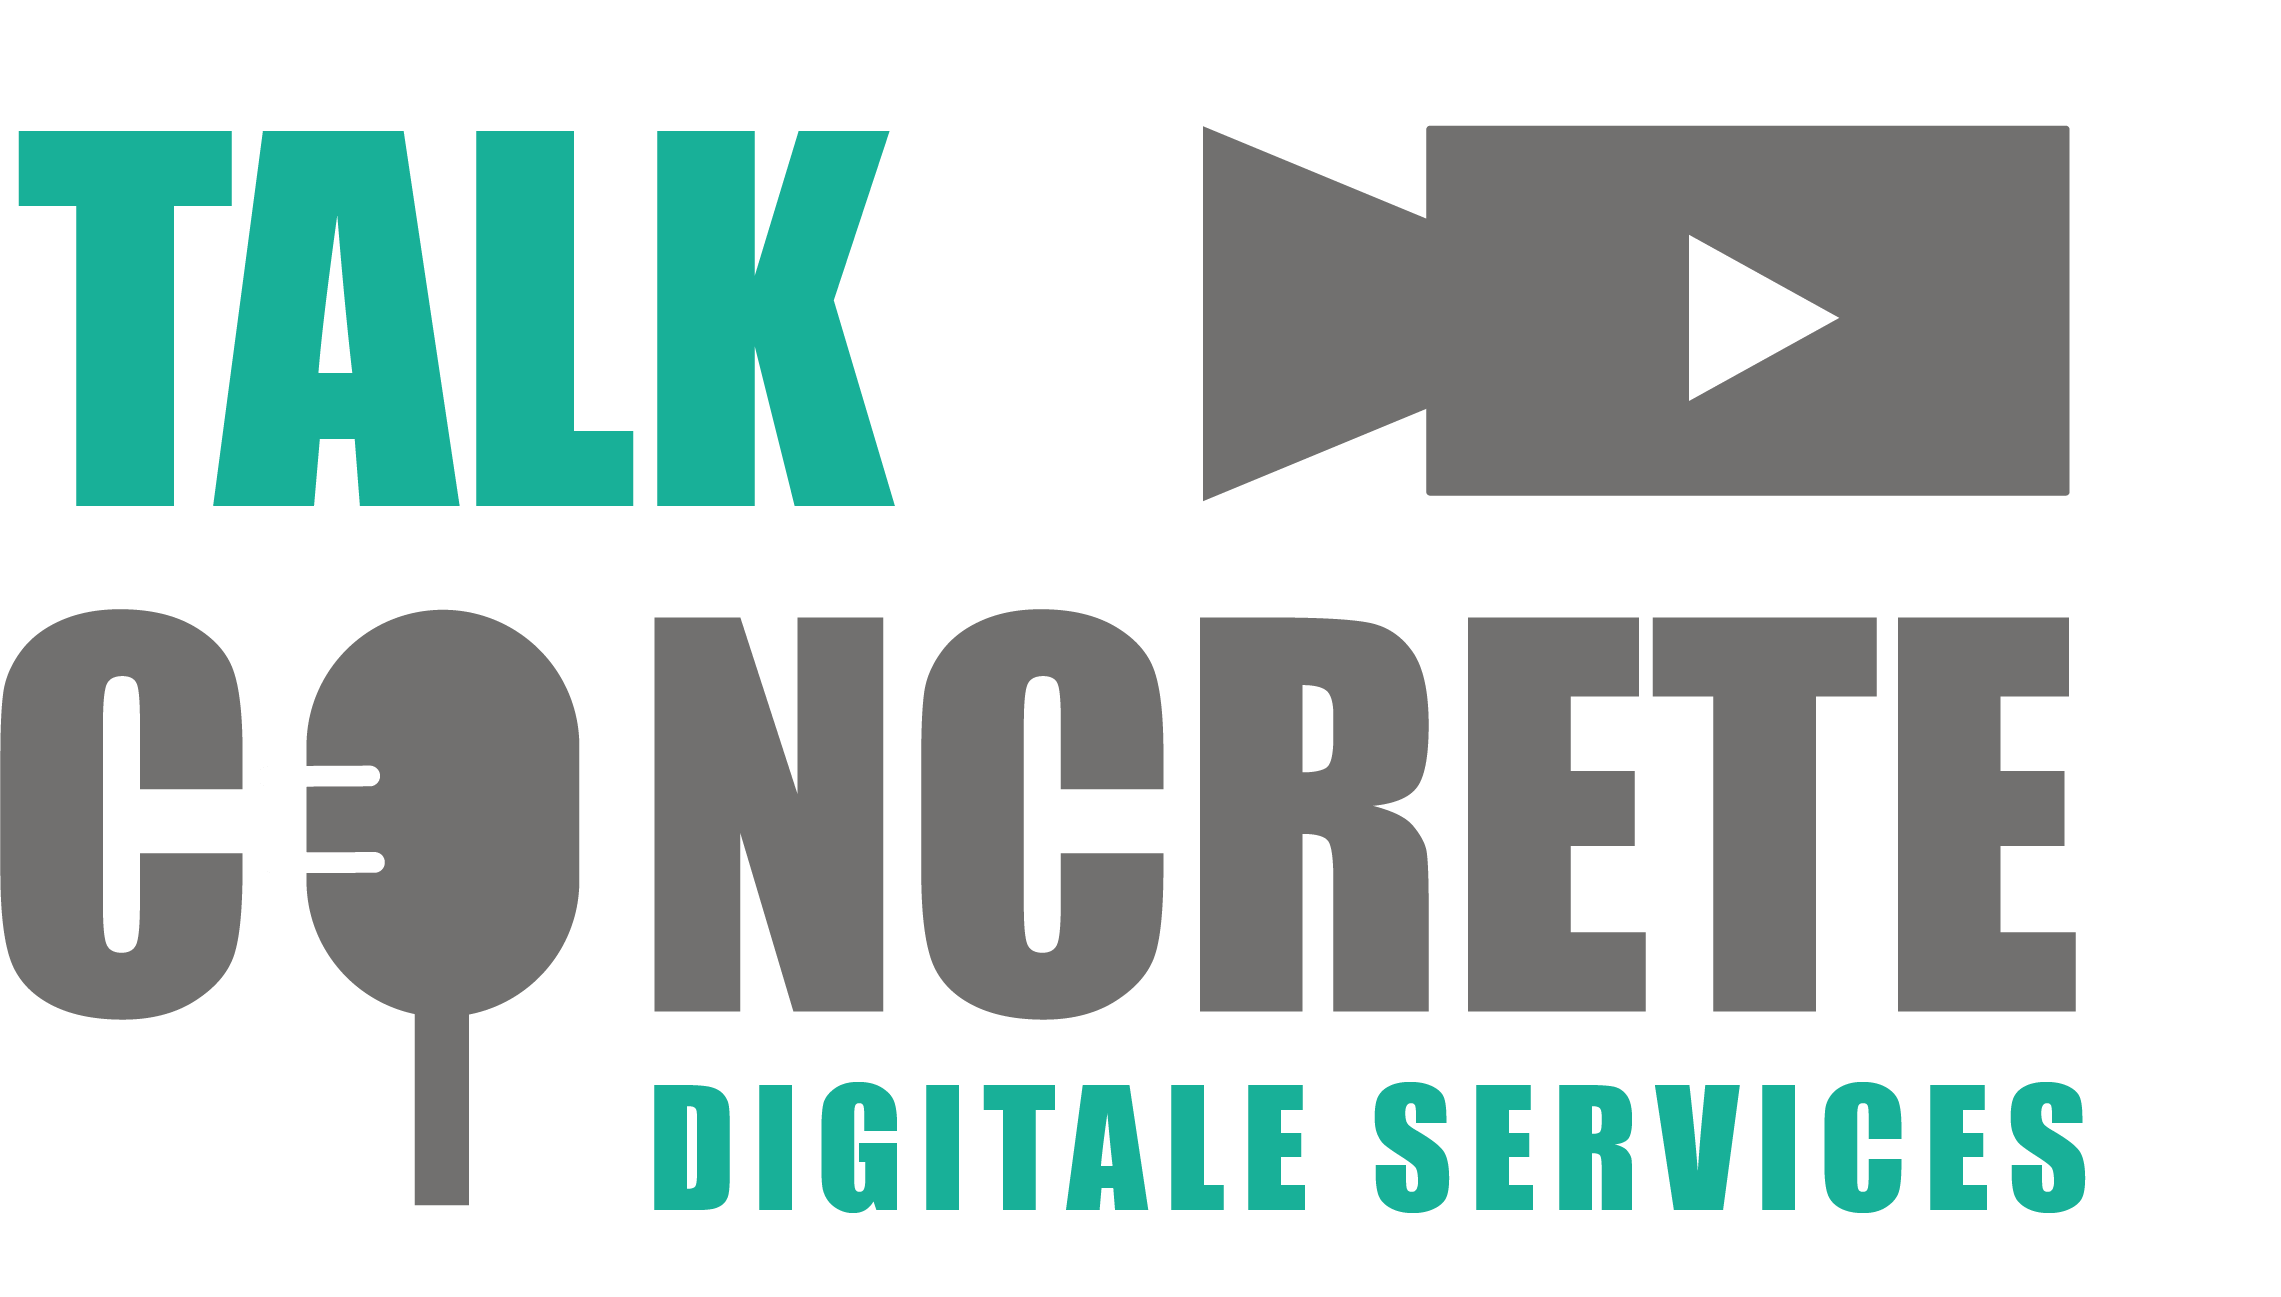 Digitale Services – TalkConcrete